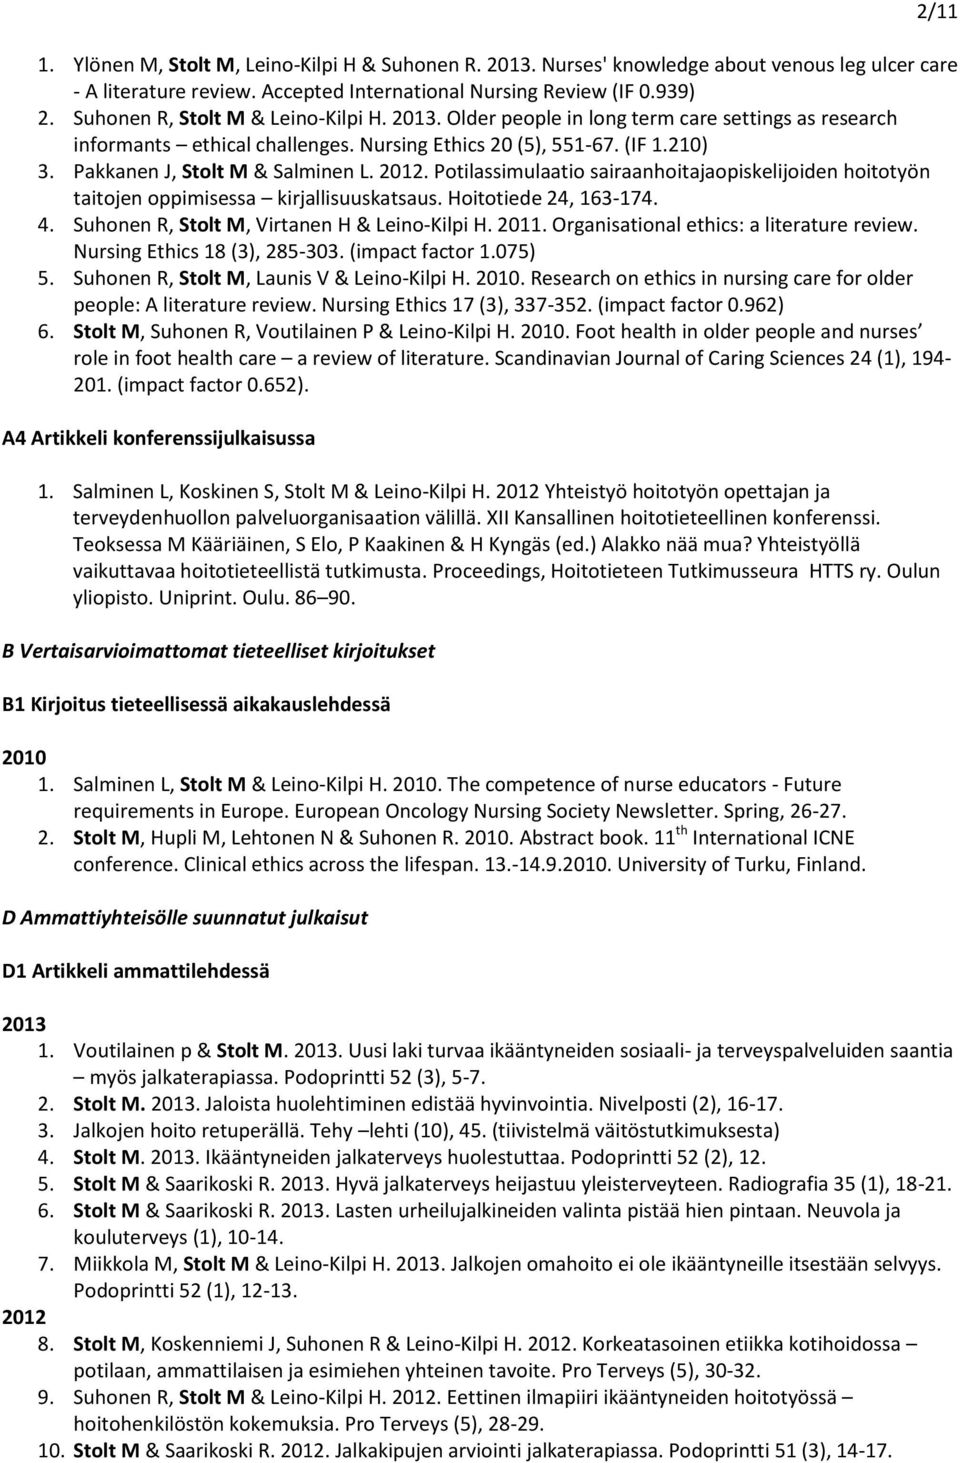 Pakkanen J, Stolt M & Salminen L. 2012. Potilassimulaatio sairaanhoitajaopiskelijoiden hoitotyön taitojen oppimisessa kirjallisuuskatsaus. Hoitotiede 24, 163-174. 4.